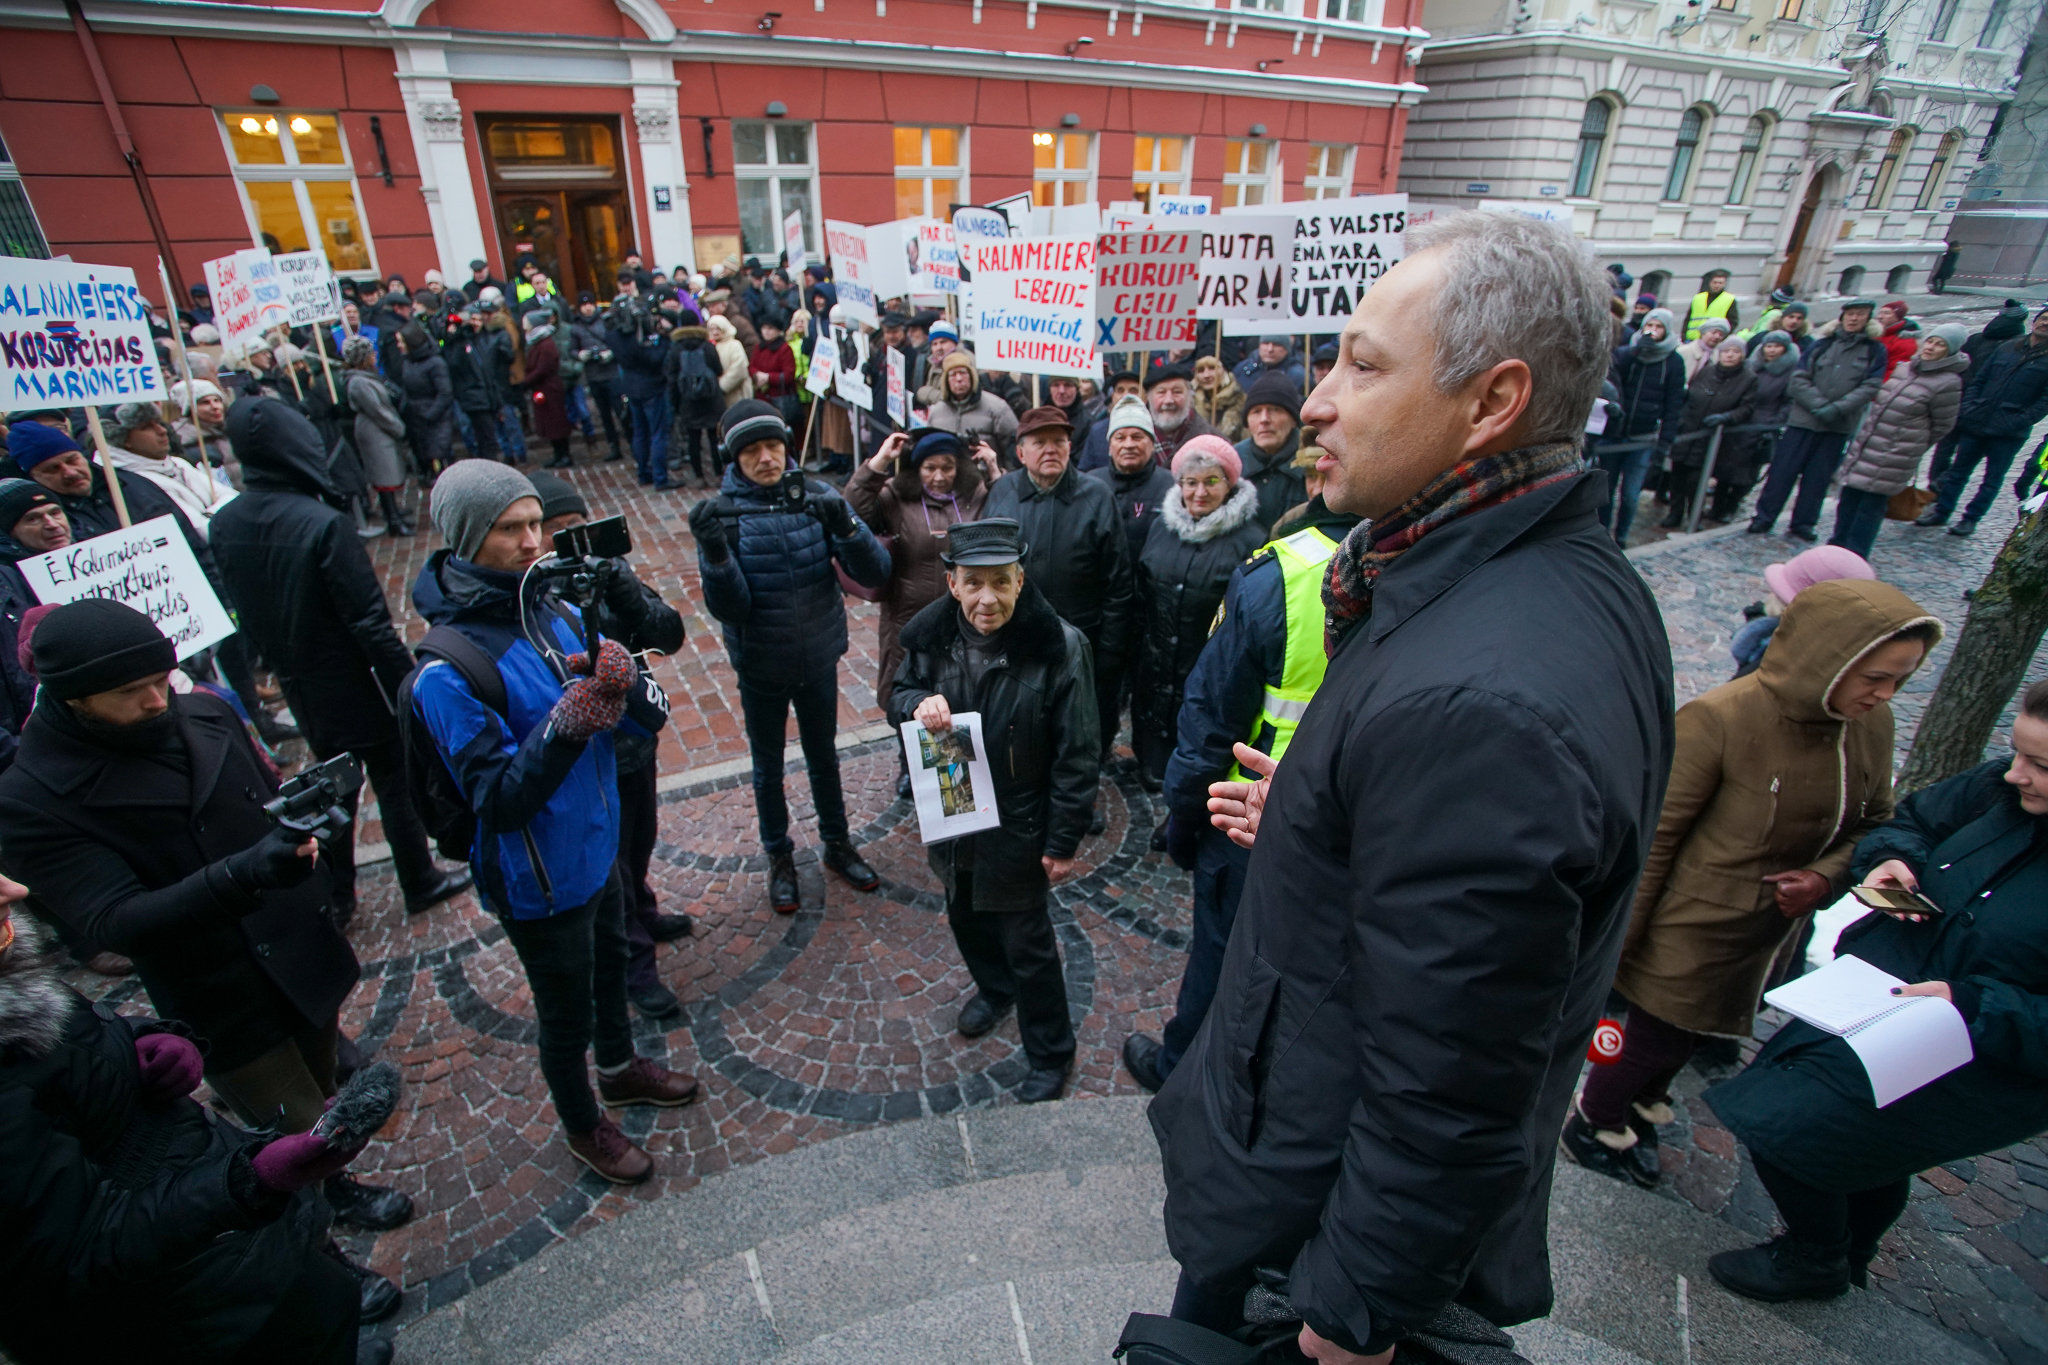 Янис Борданс на пикете Новой консервативной партии "За правовую Латвию!" у здания Сейма, 31 января 2019 